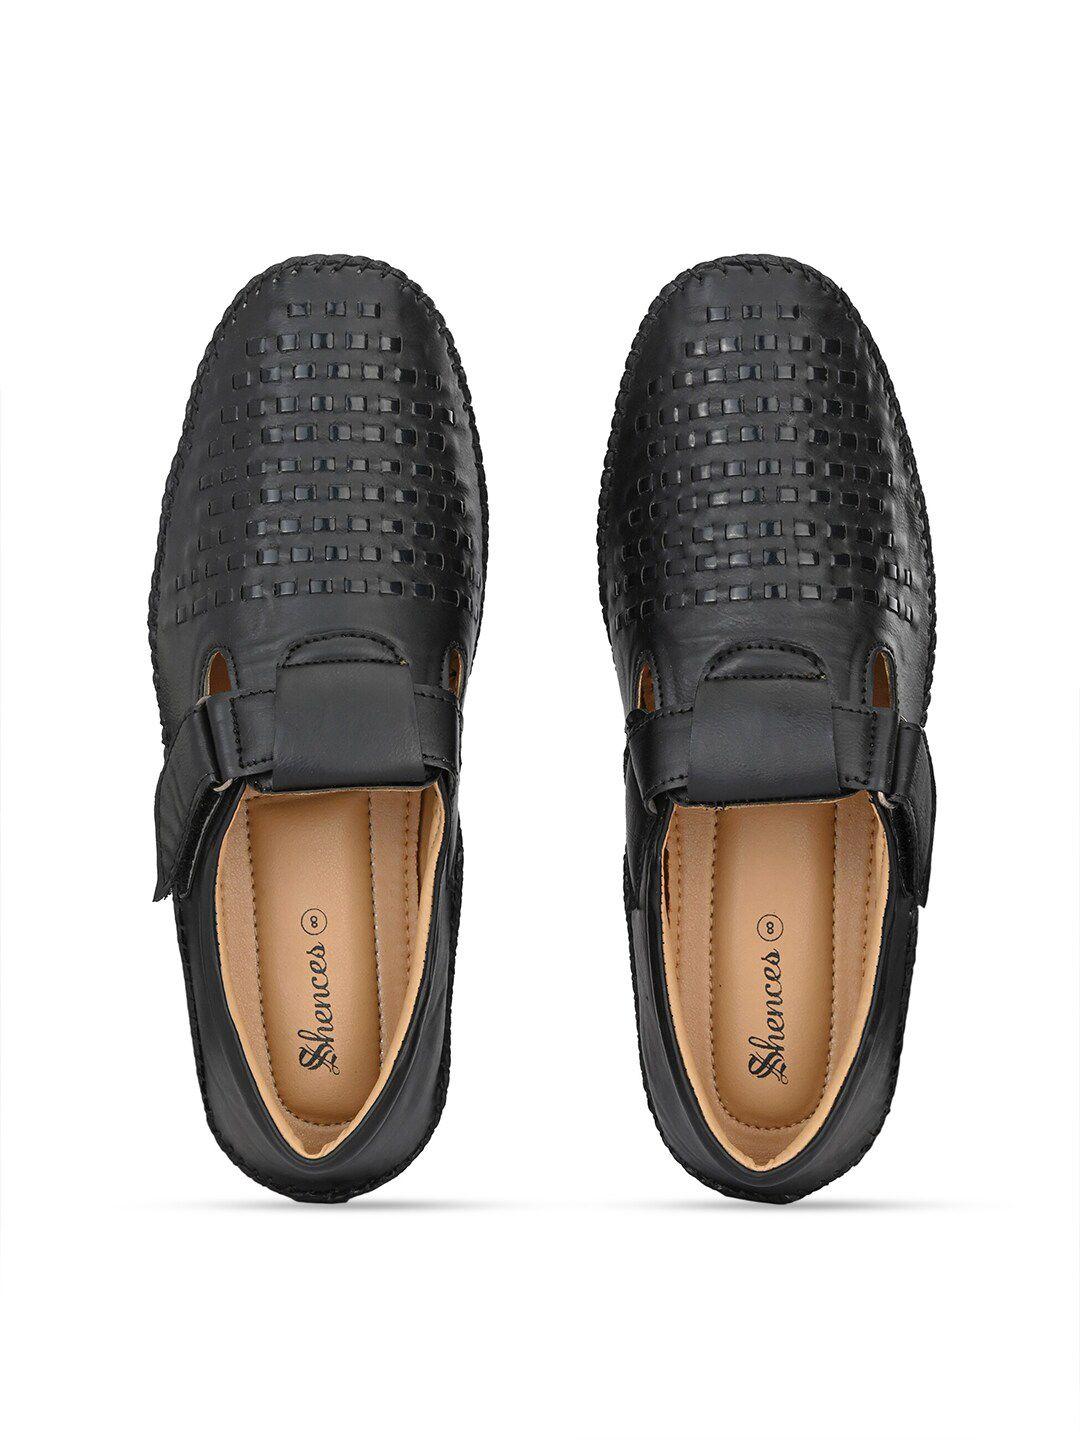 shences-men-black-&-brown-shoe-style-sandals